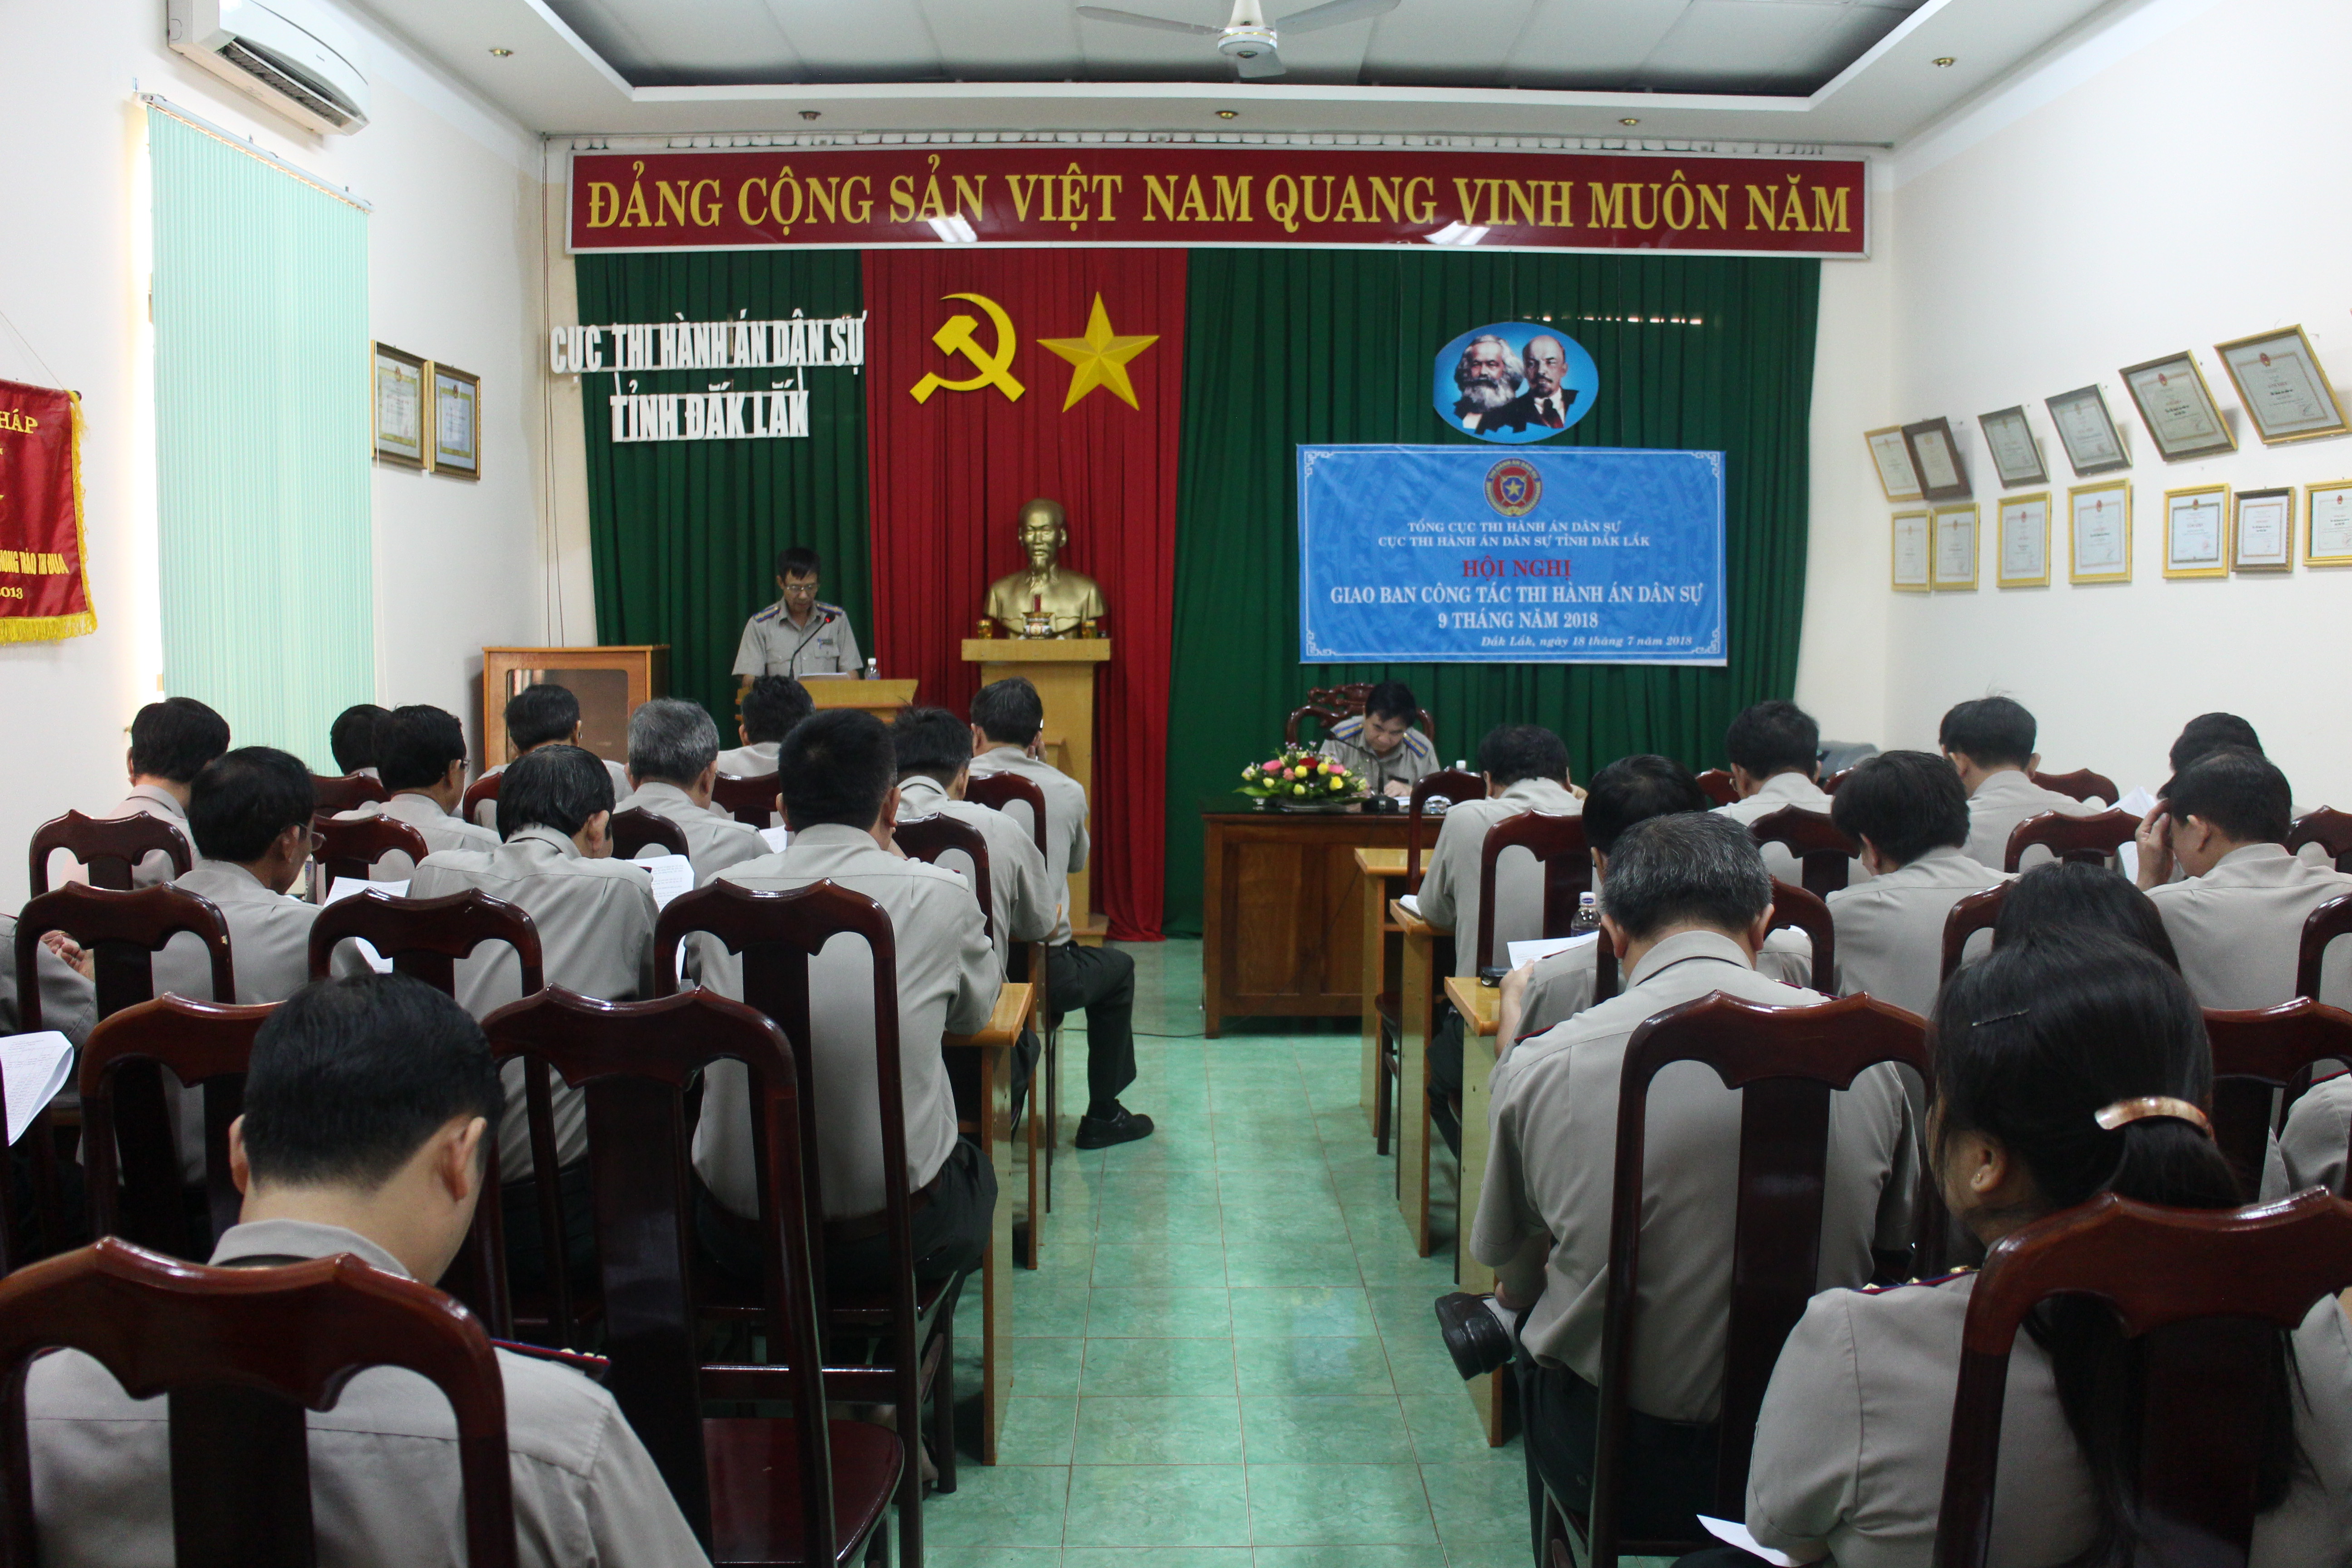 Cục Thi hành án dân sự tỉnh Đắk Lắk tổ chức Hội nghị giao ban công tác thi hành án dân sự, thi hành án hành chính 9 tháng năm 2018